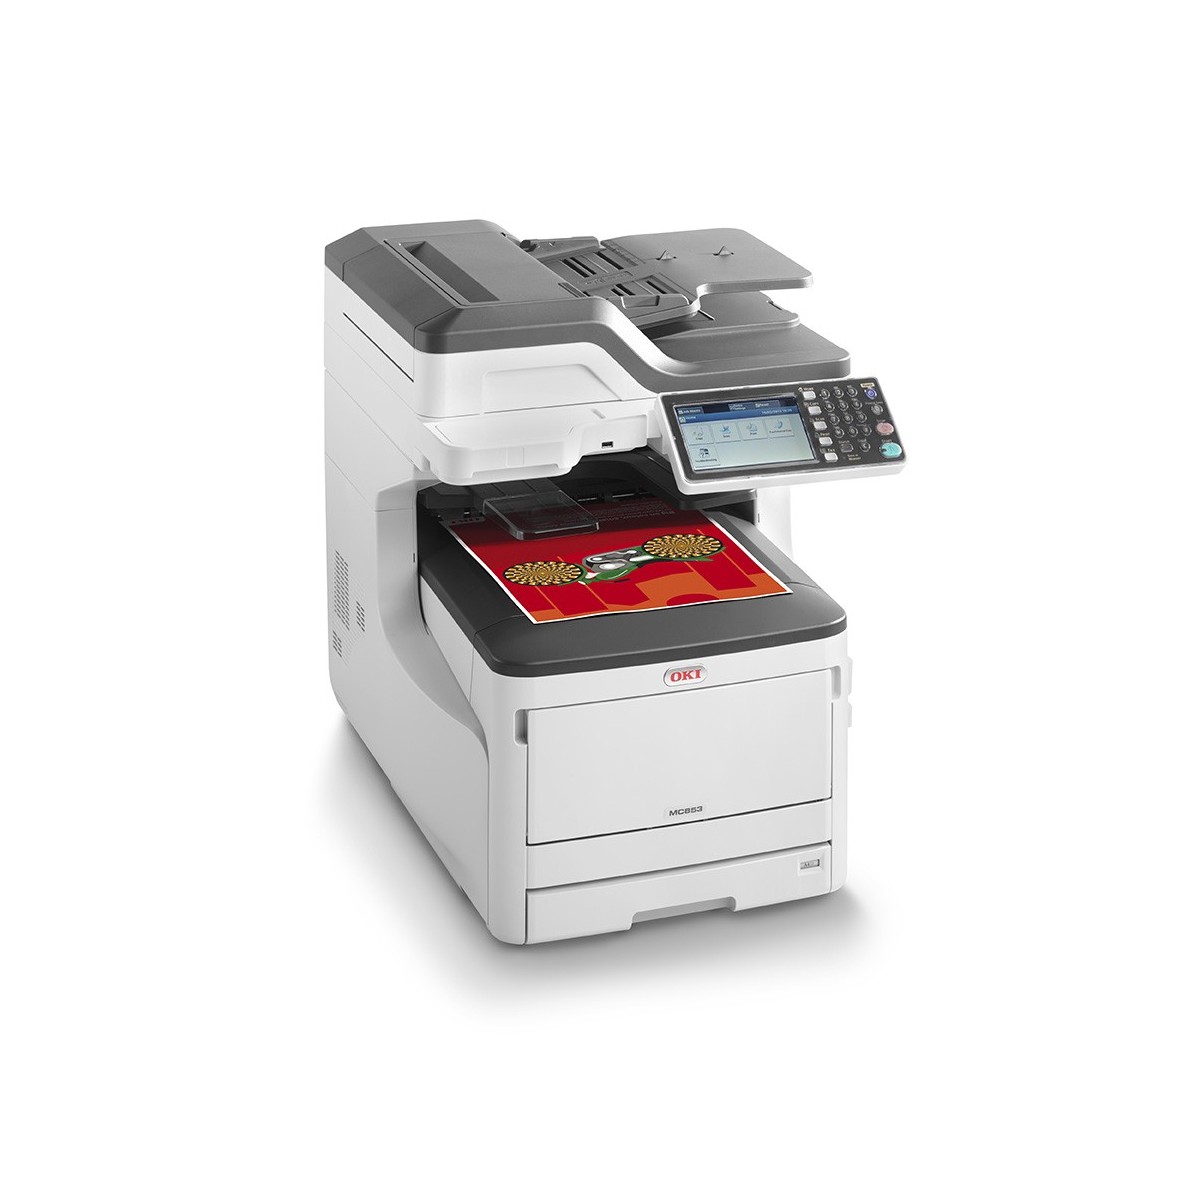 OKI MC853dn - LED - Colour printing - 1200 x 600 DPI - Colour copying - A3 - Black - White